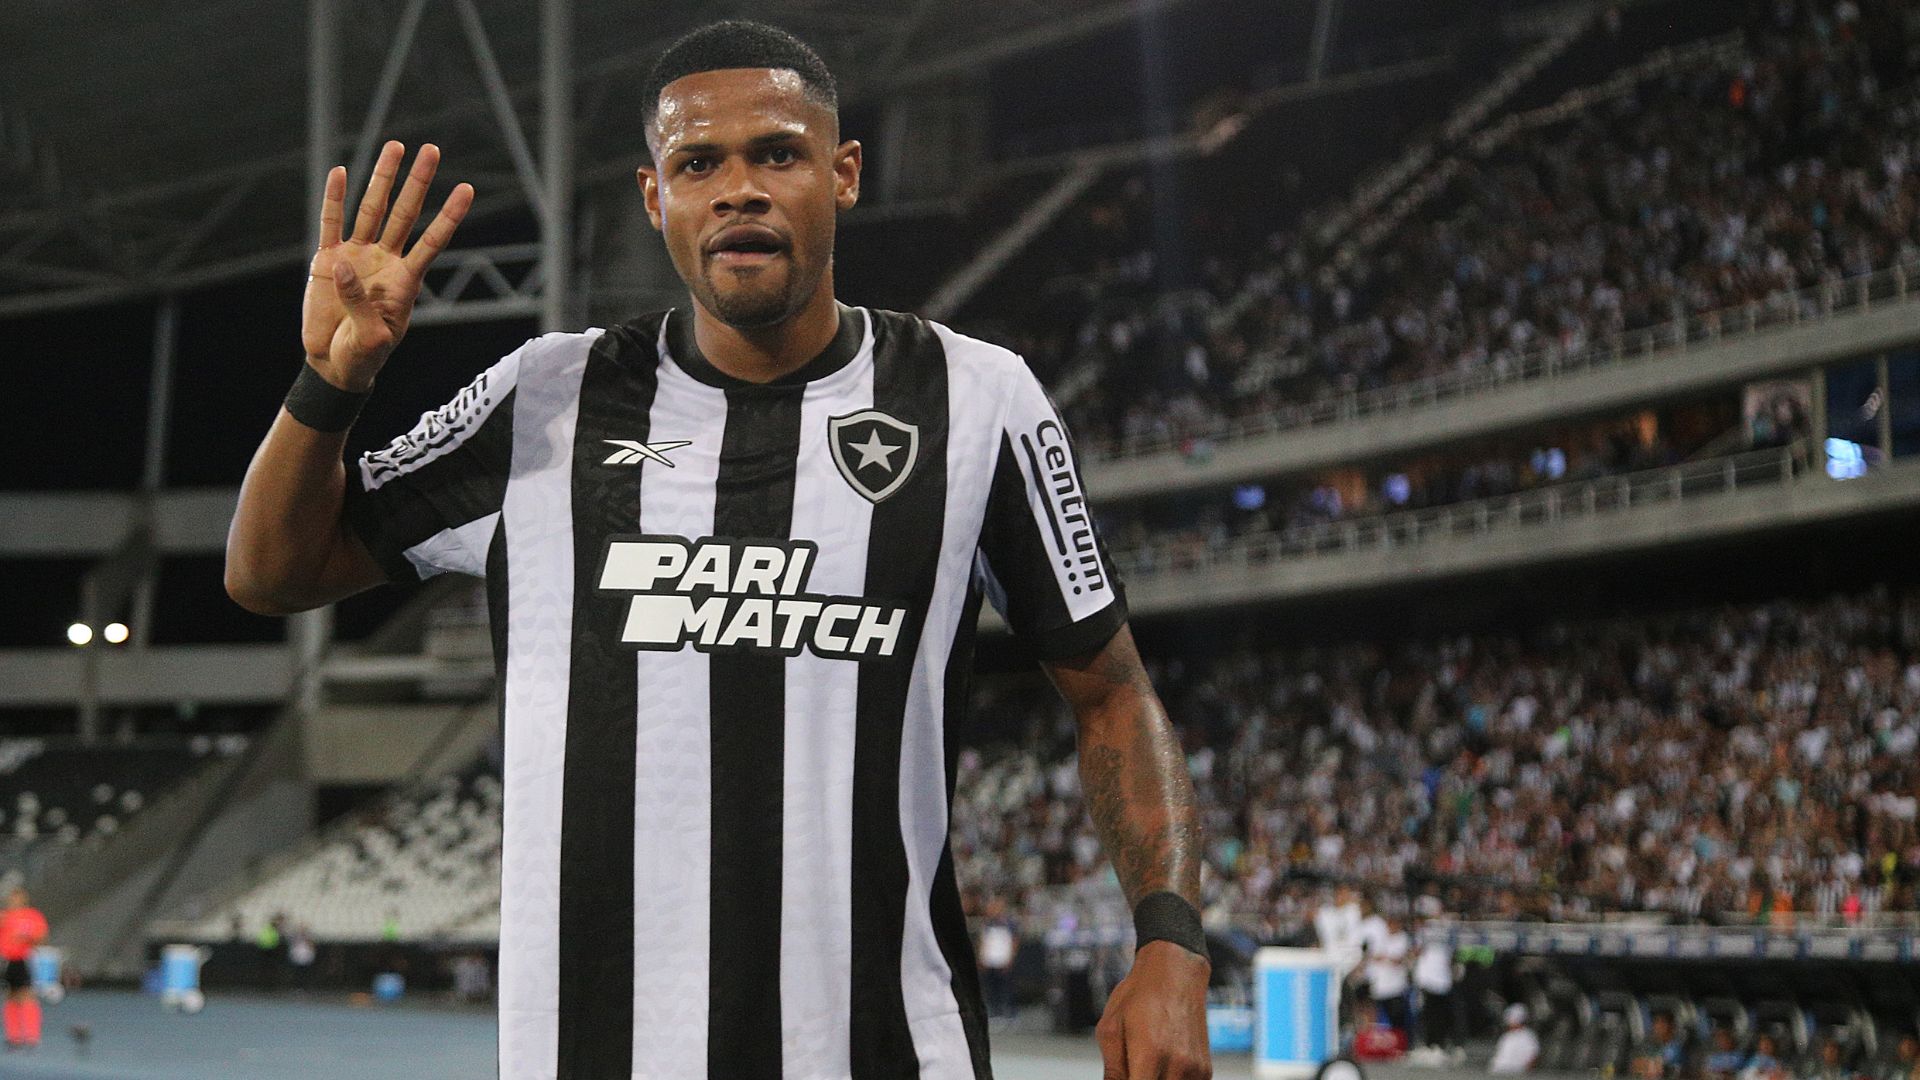 Junior Santos comemorando após o quarto gol marcado contra o Aurora (Crédito: Vitor Silva / Botafogo)